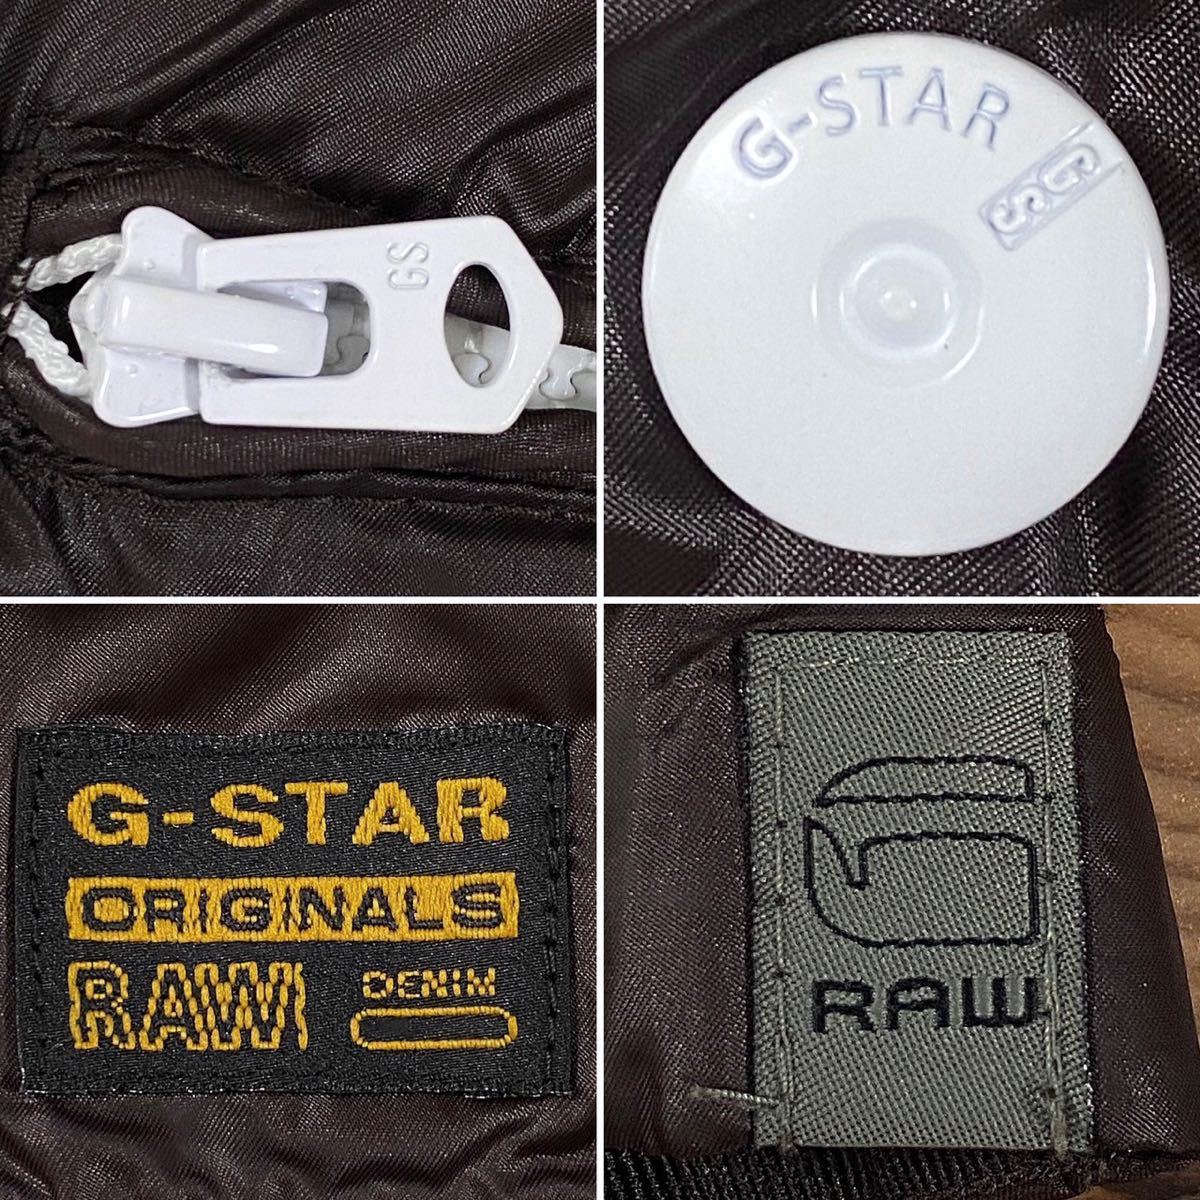 G-STAR RAW ジースターロゥ 薄手ブルゾン ジップ&スナップボタン/S